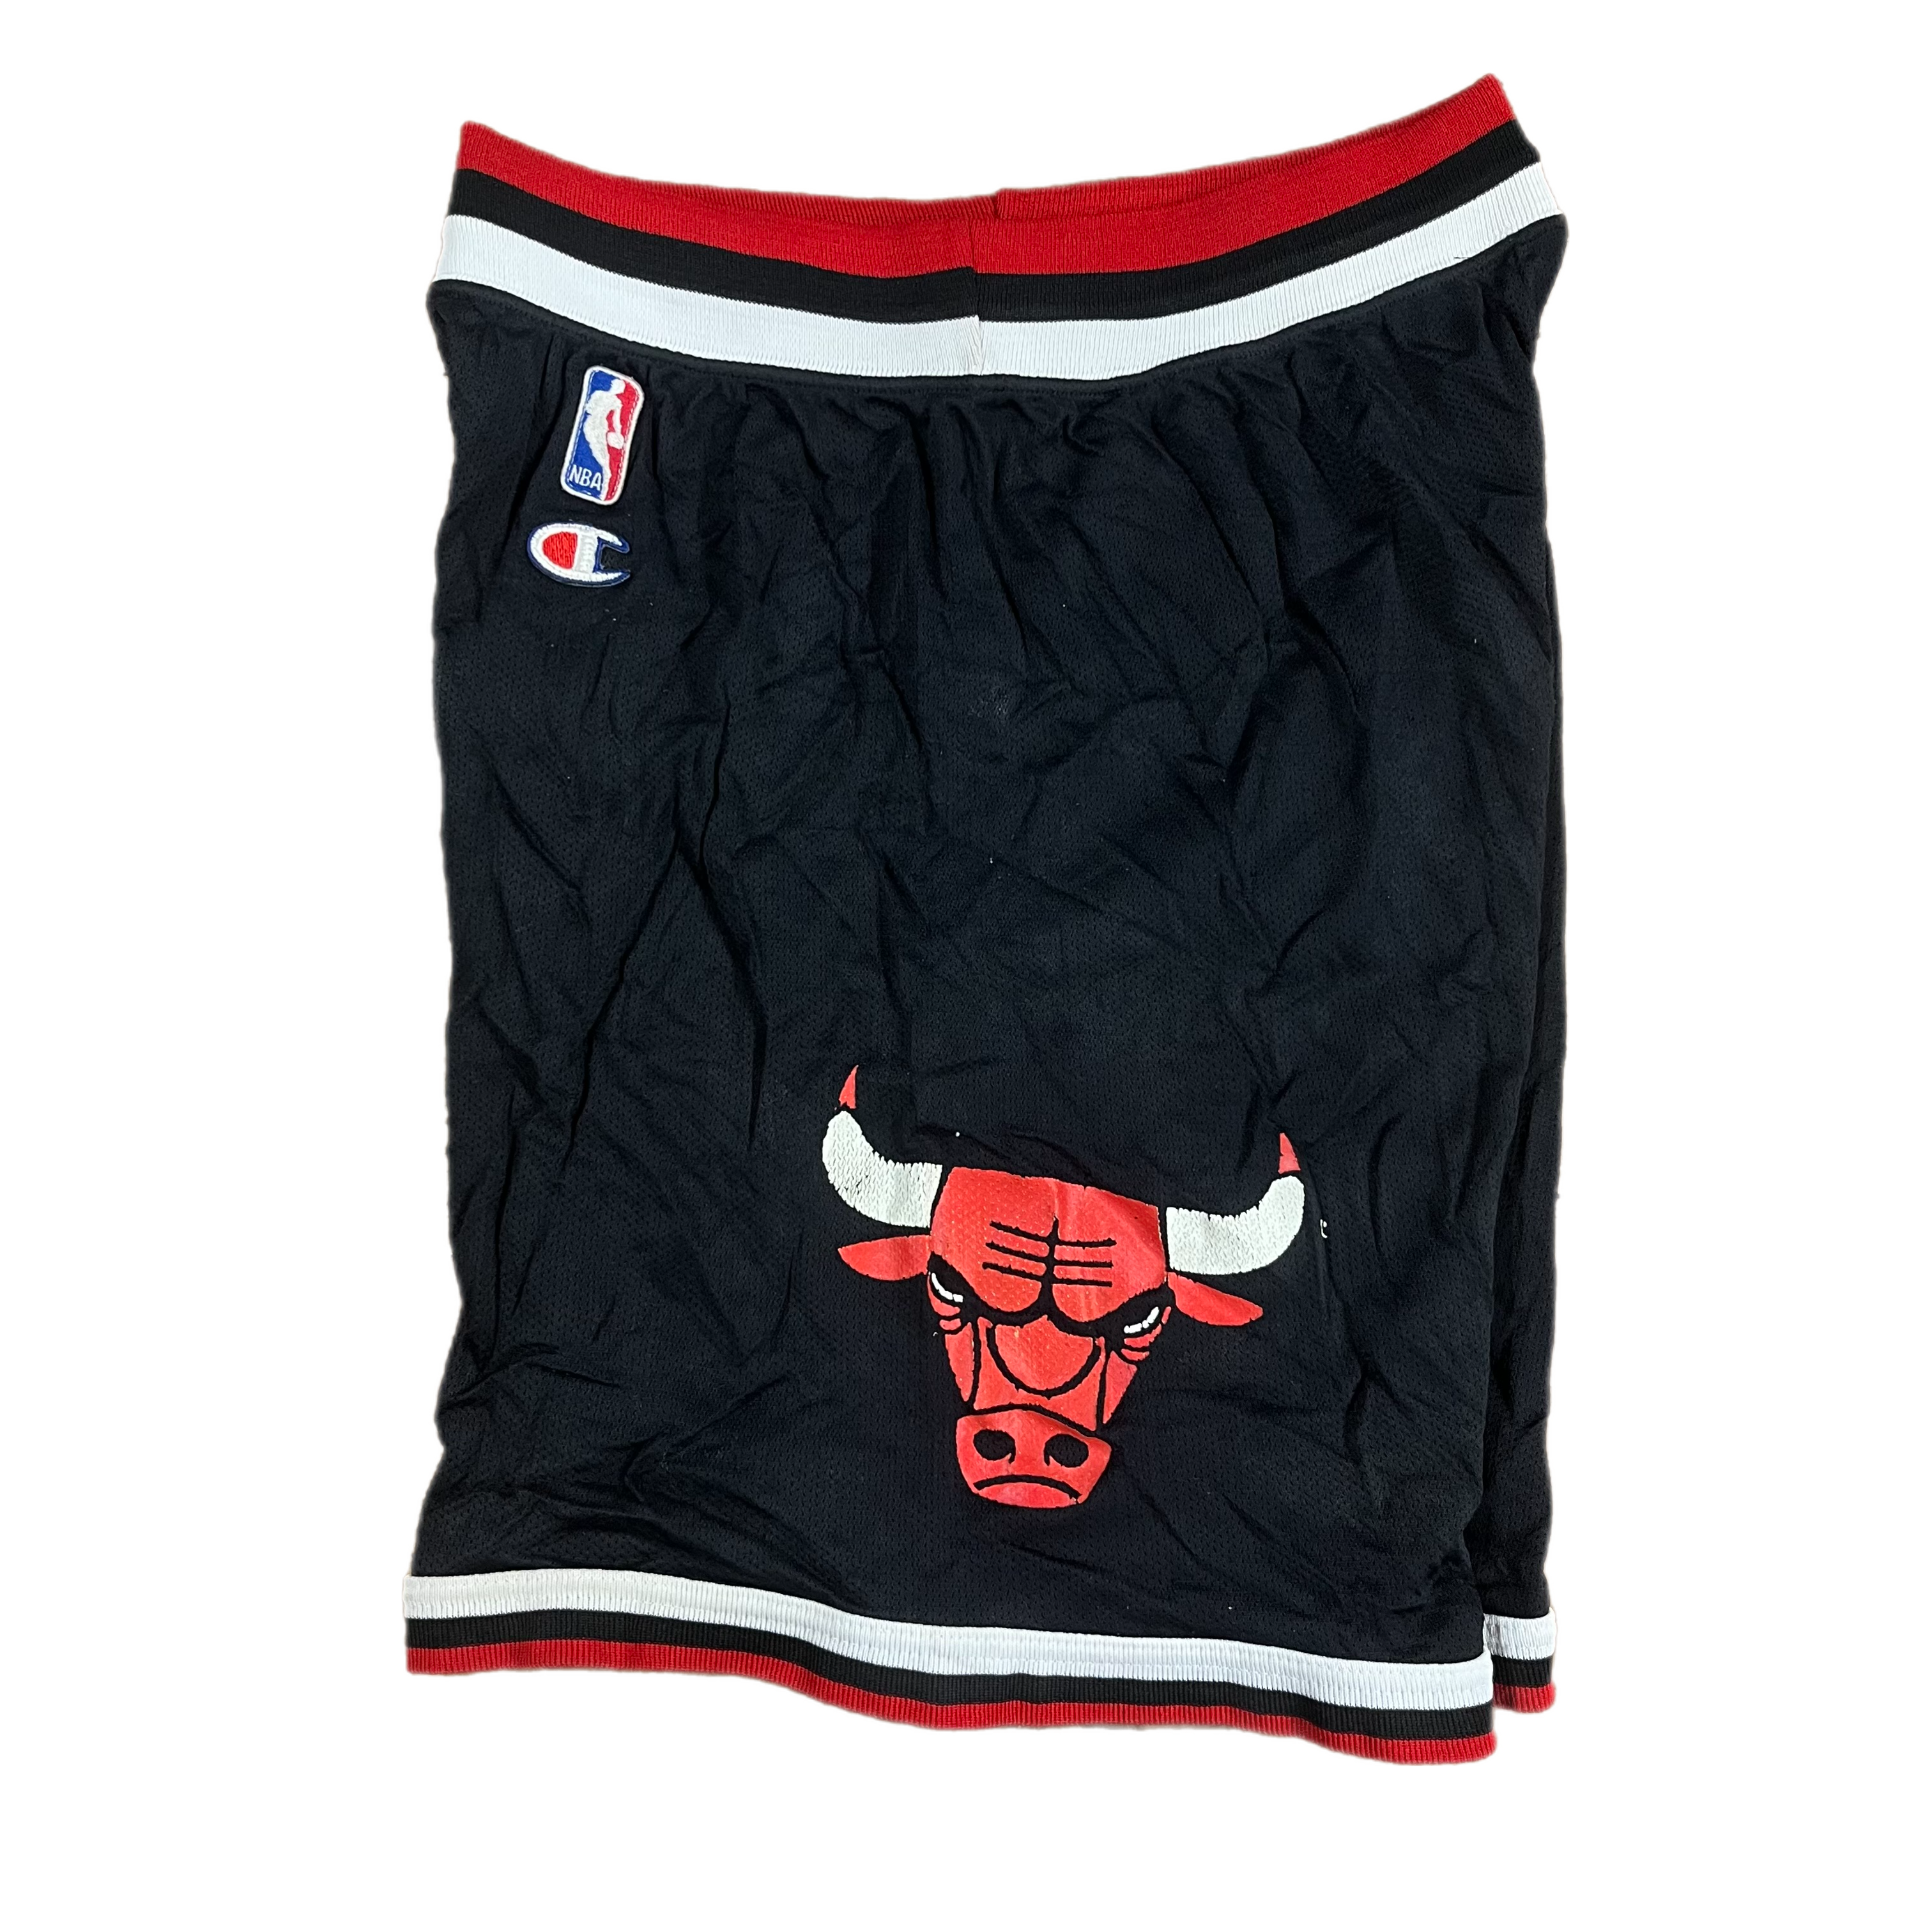 Basketball Shorts - NBA teams printed design / FREE Shipping!